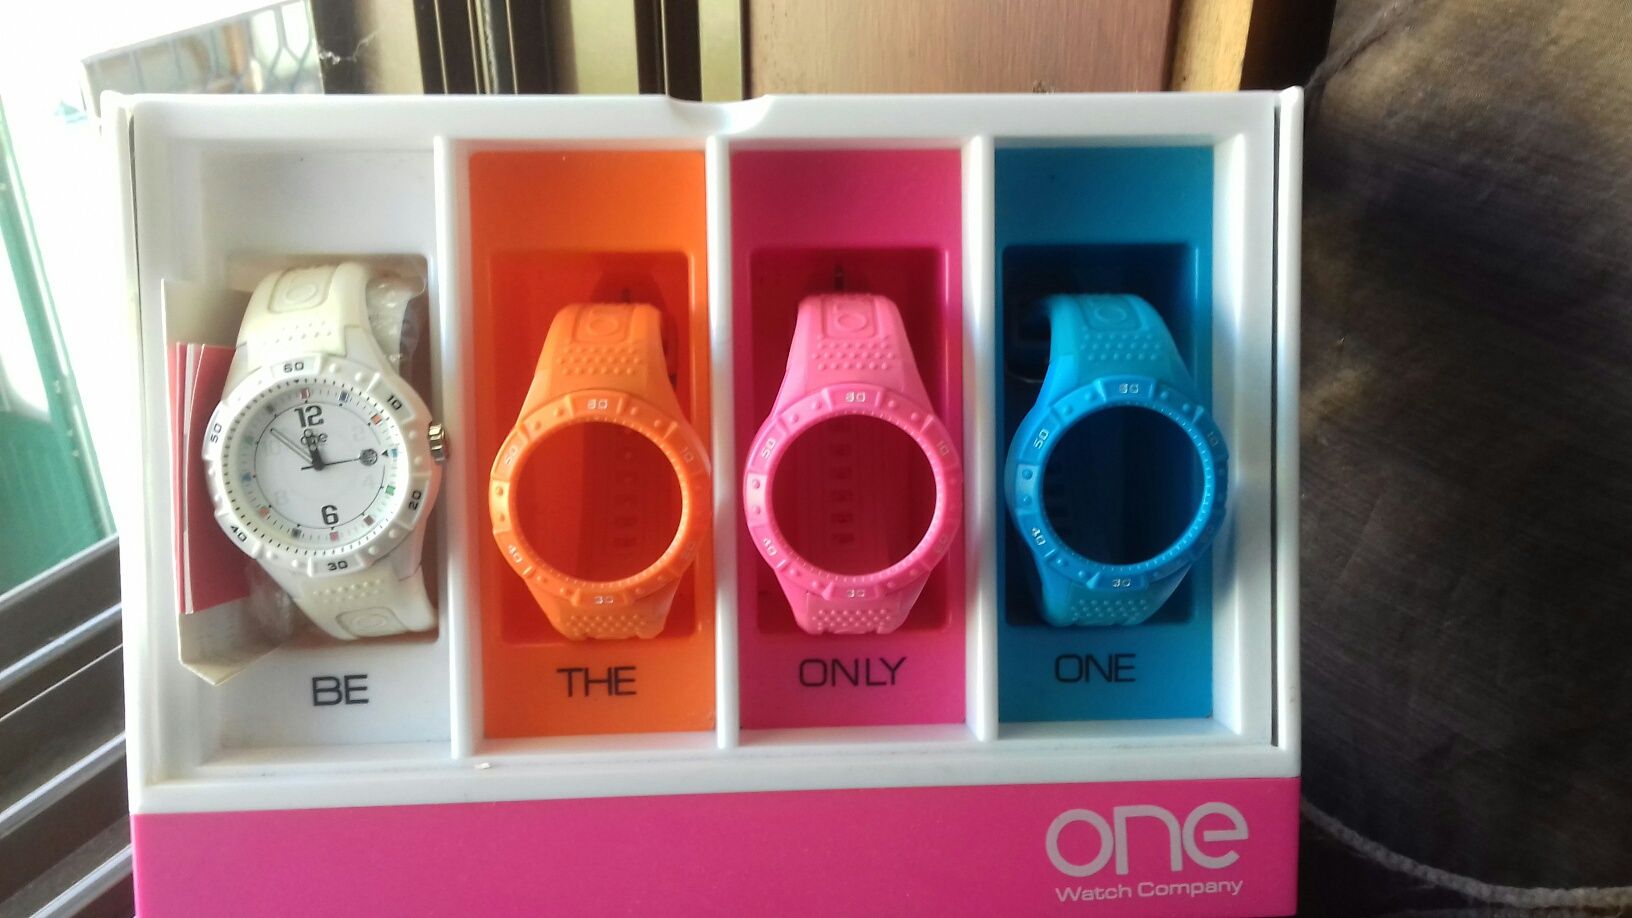 Relógio One Watch Company